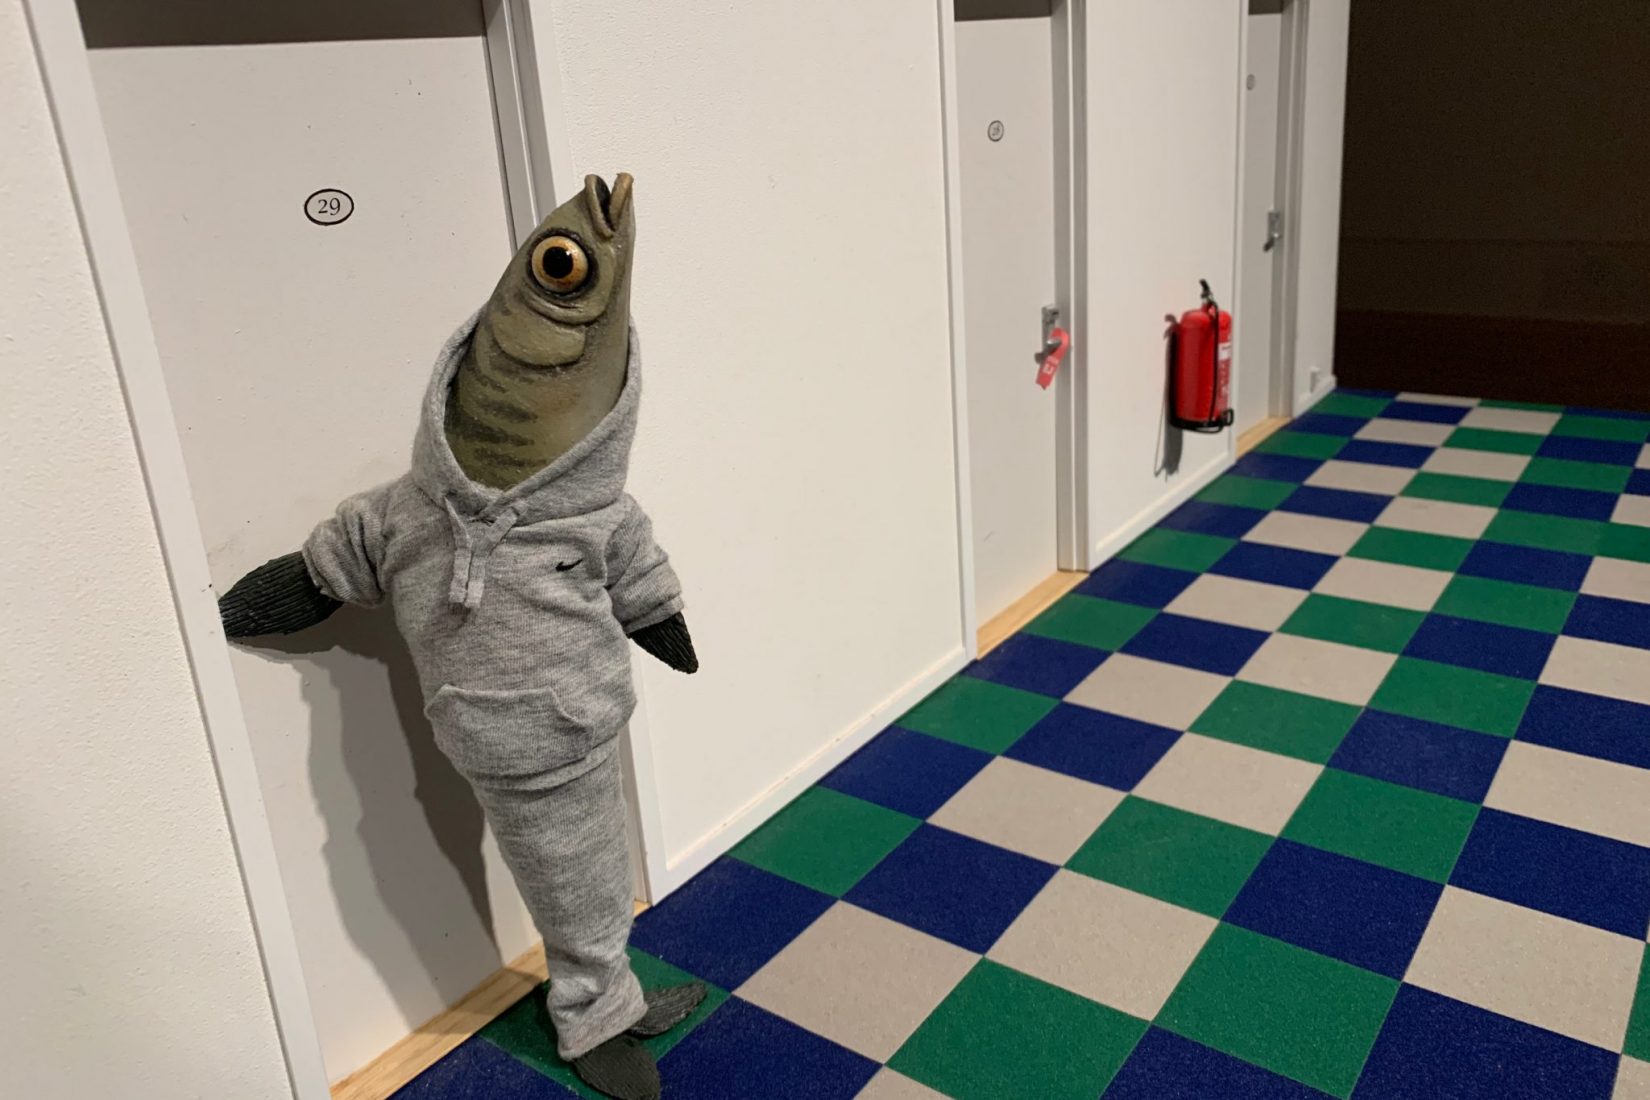 Bilden kommer från den animerade filmen The Burden och föreställer en grön fisk i grå träningskläder som är på väg in i ett hotellrum.